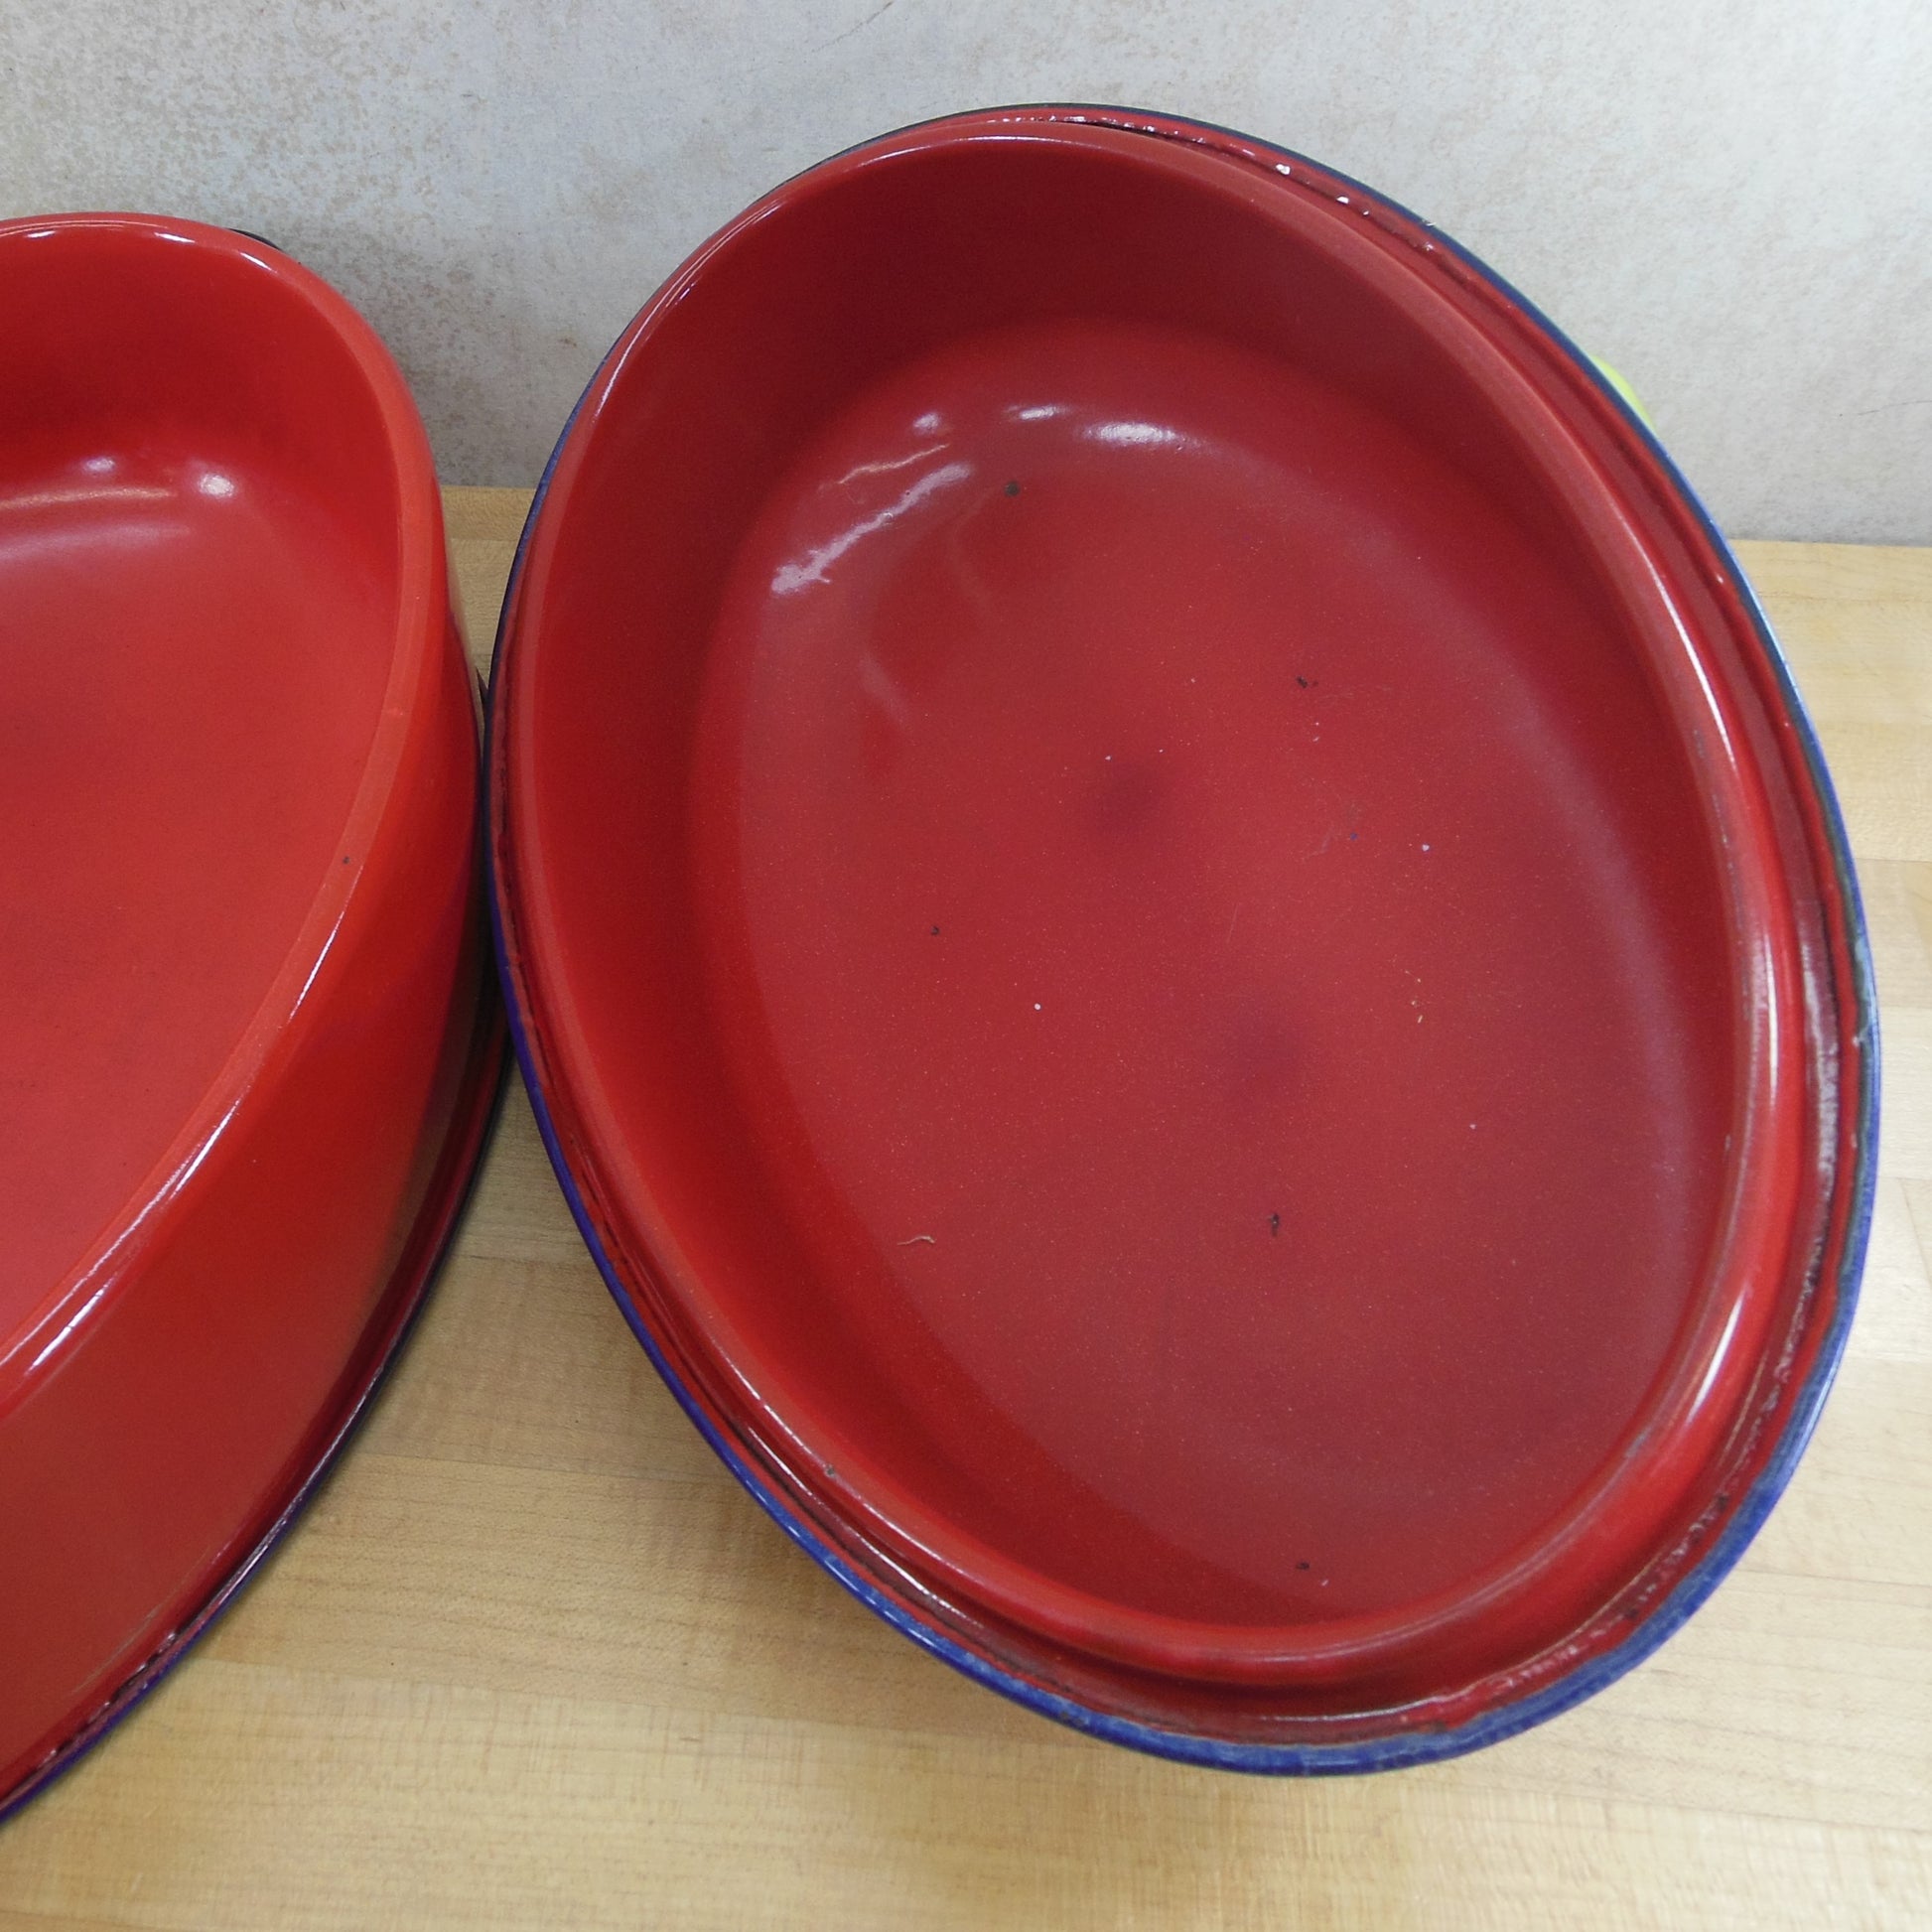 Unbranded Red Blue Trim Rim Enamelware Oval Roaster Pot used